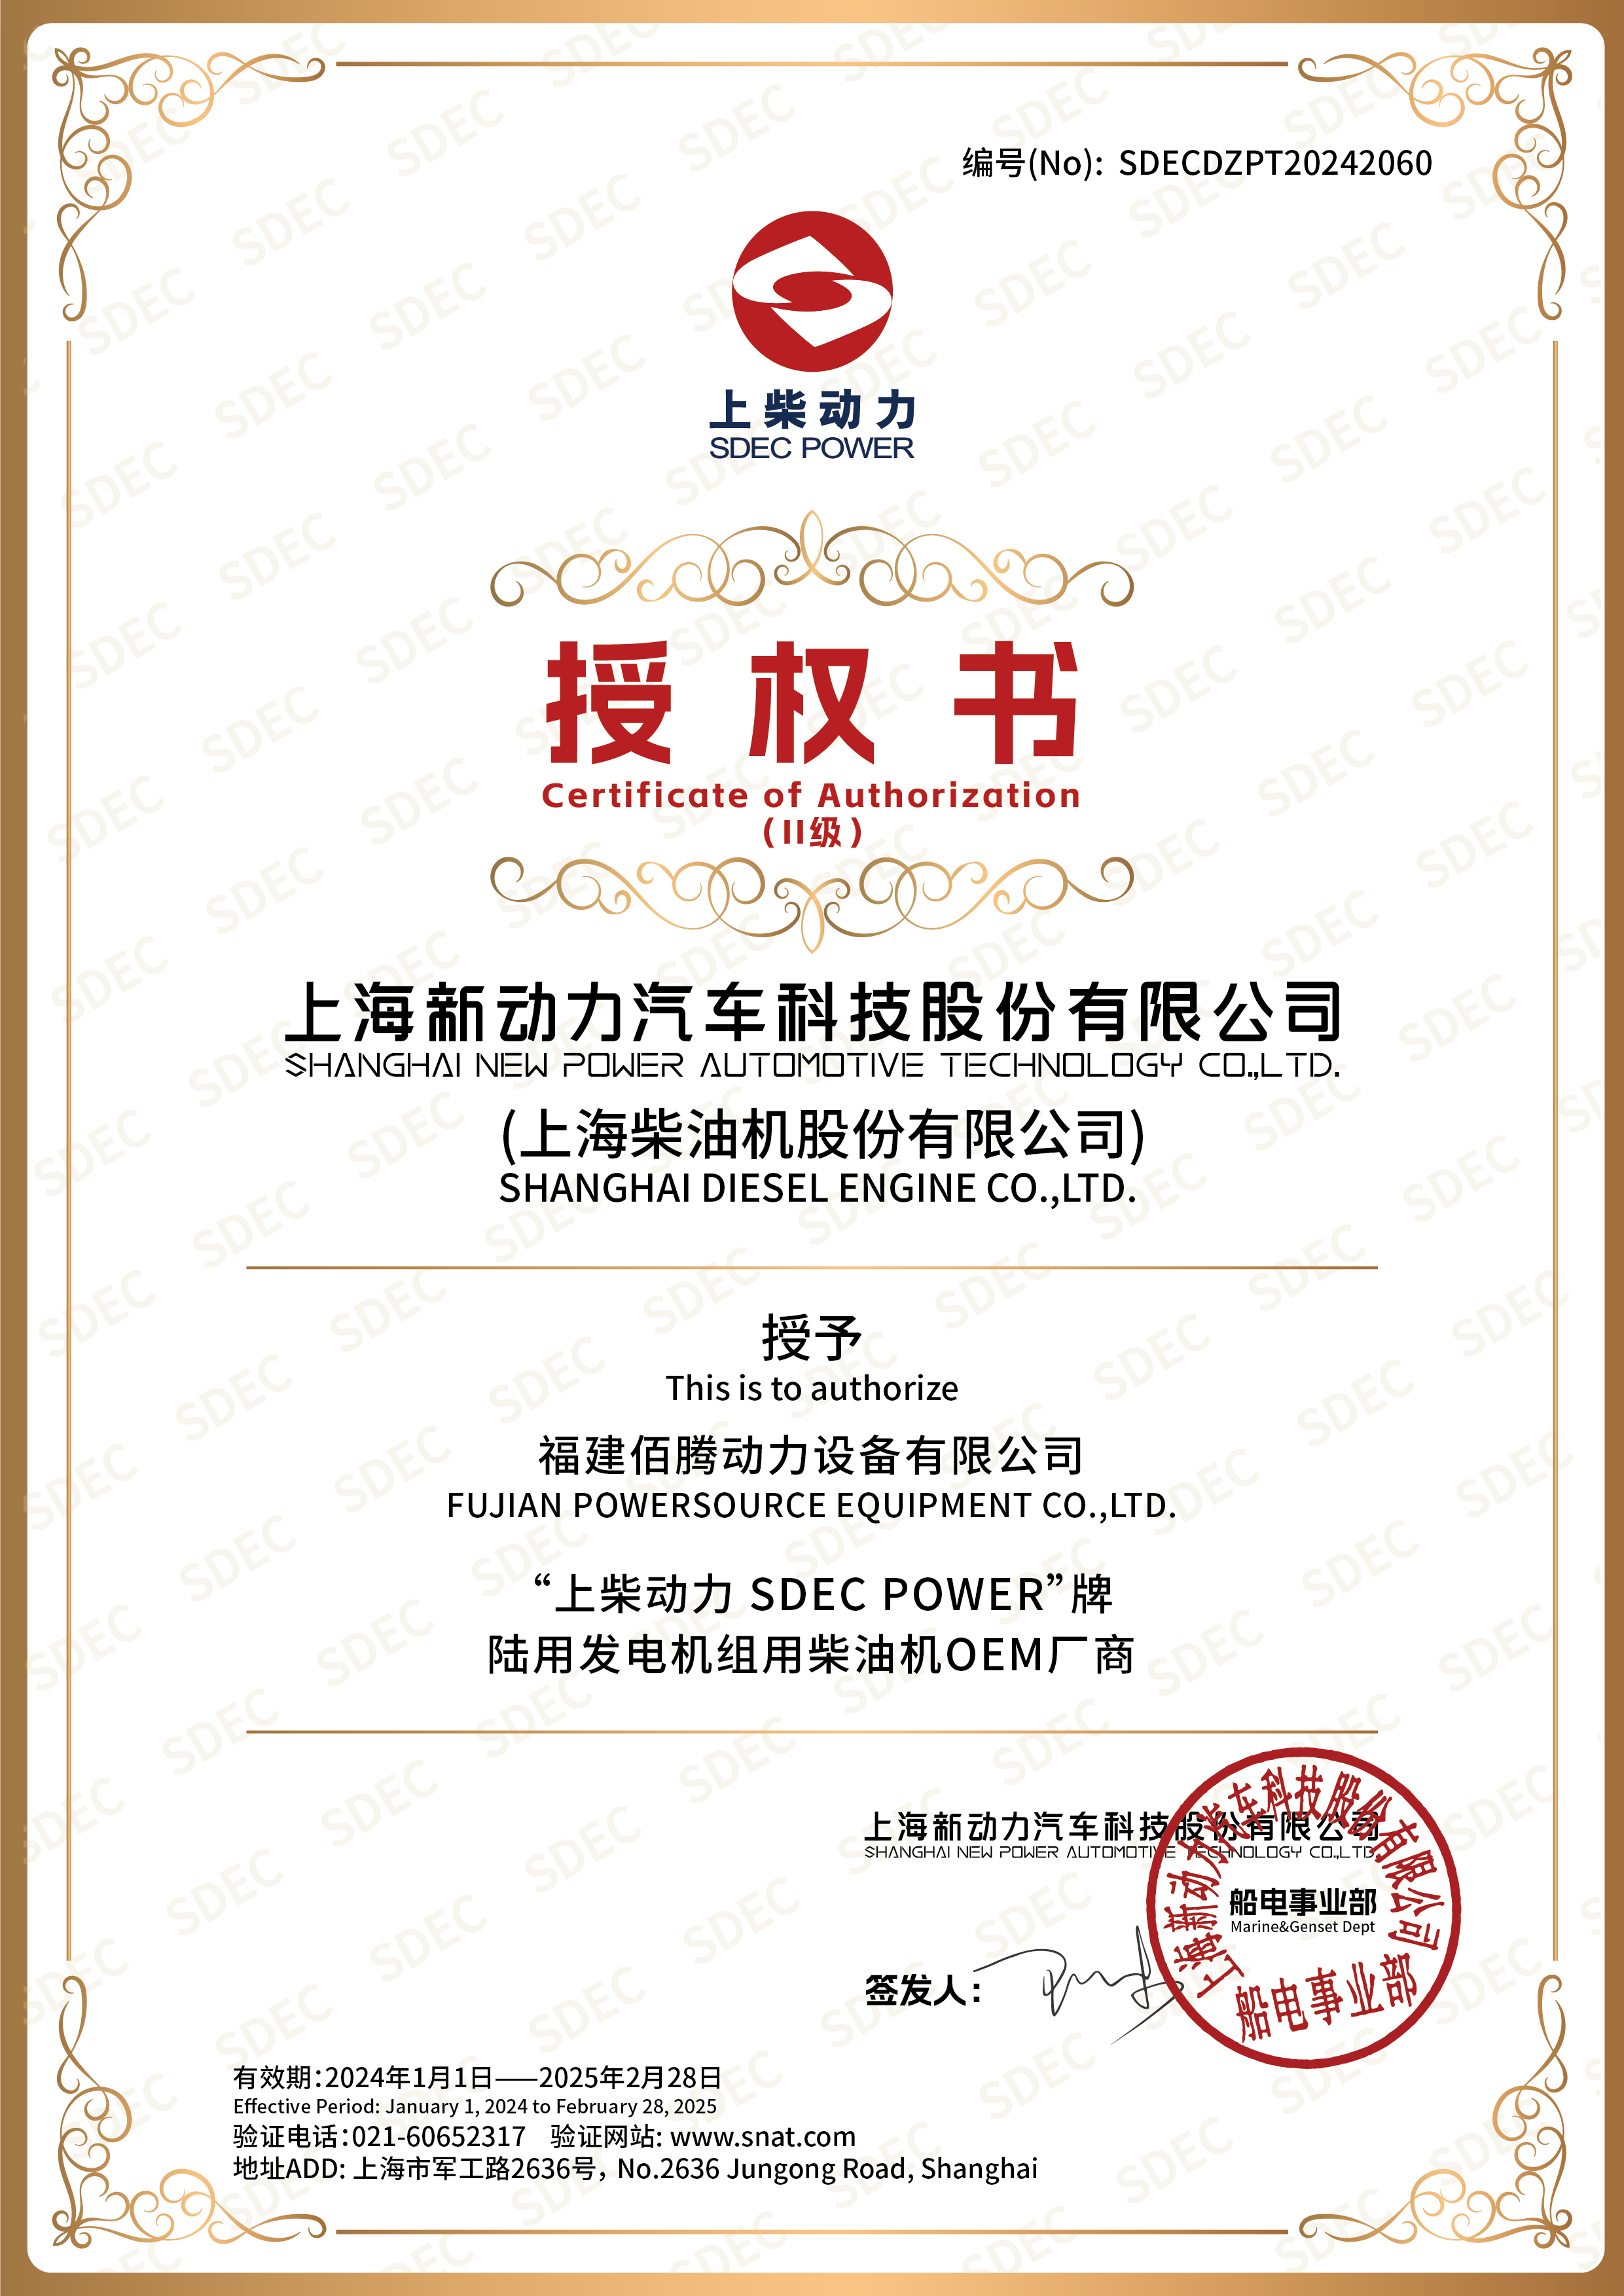 佰腾 SDEC OEM 证书